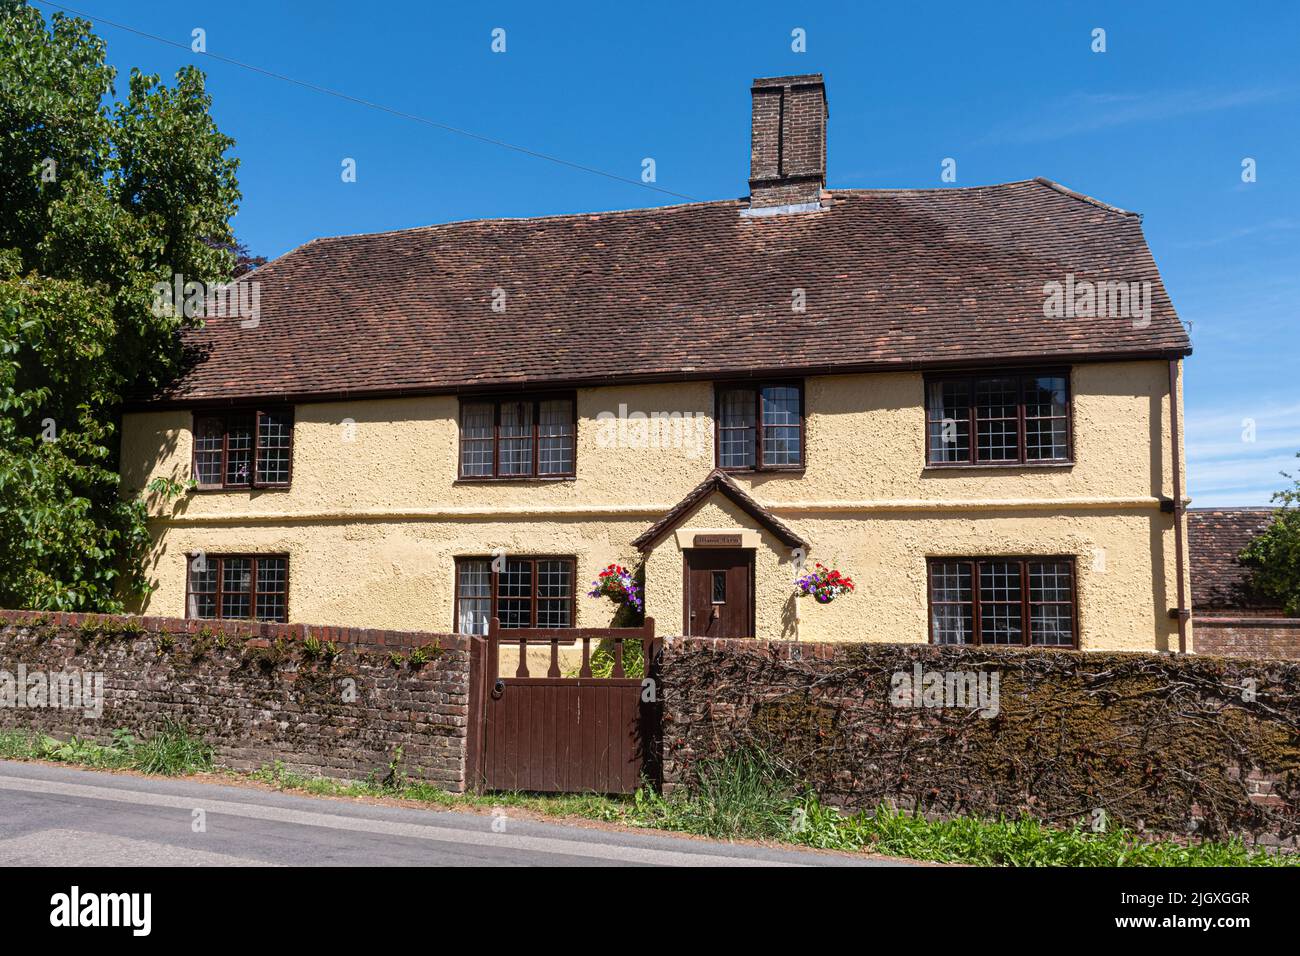 Manor Farm House, une belle propriété historique dans le village de Soberton, Hampshire, Angleterre, Royaume-Uni Banque D'Images